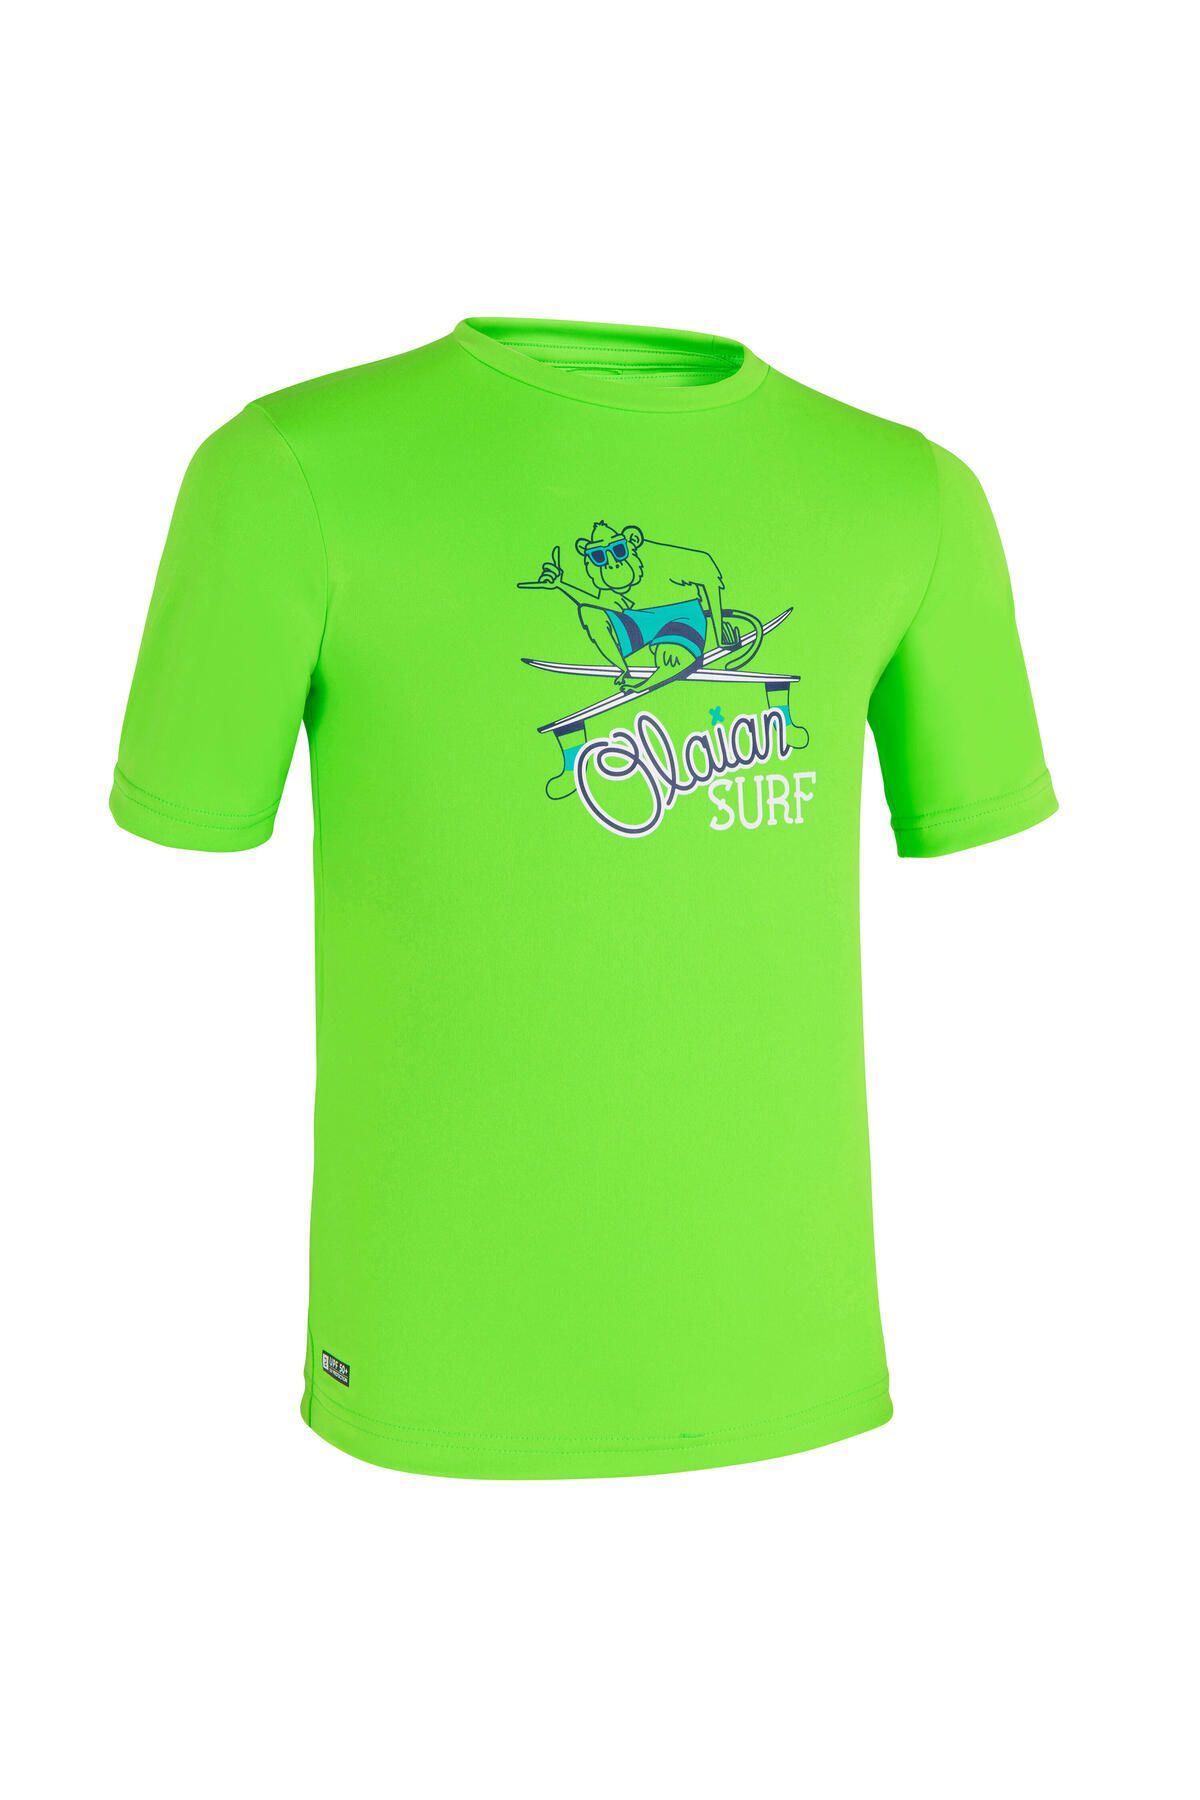 Decathlon Çocuk Slim Fit Kısa Kollu UV Korumalı Tişört - Yeşil - Desenli - 100